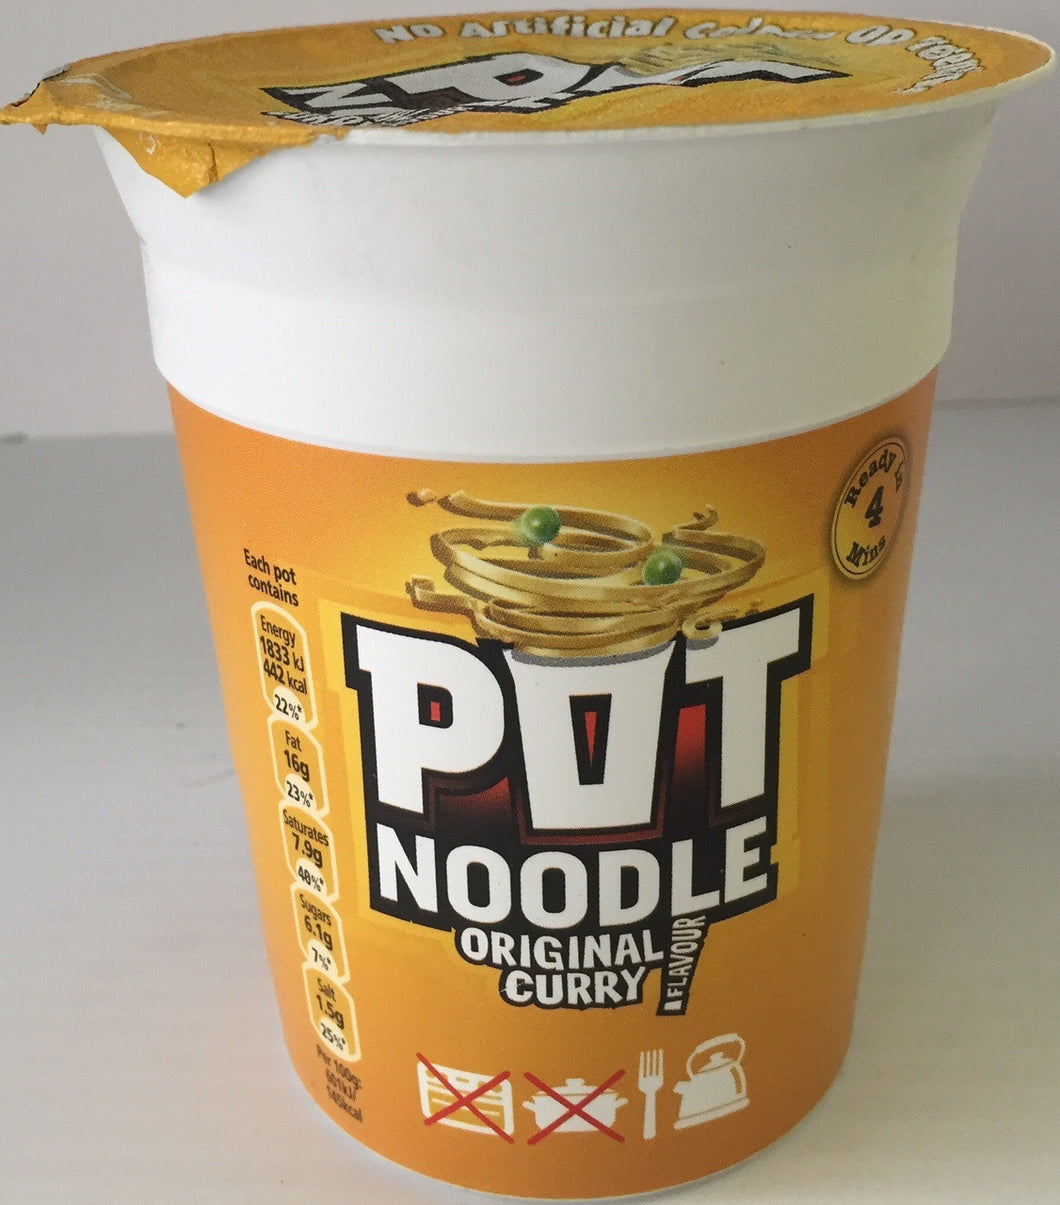 Pot Noodle Original Curry 89g